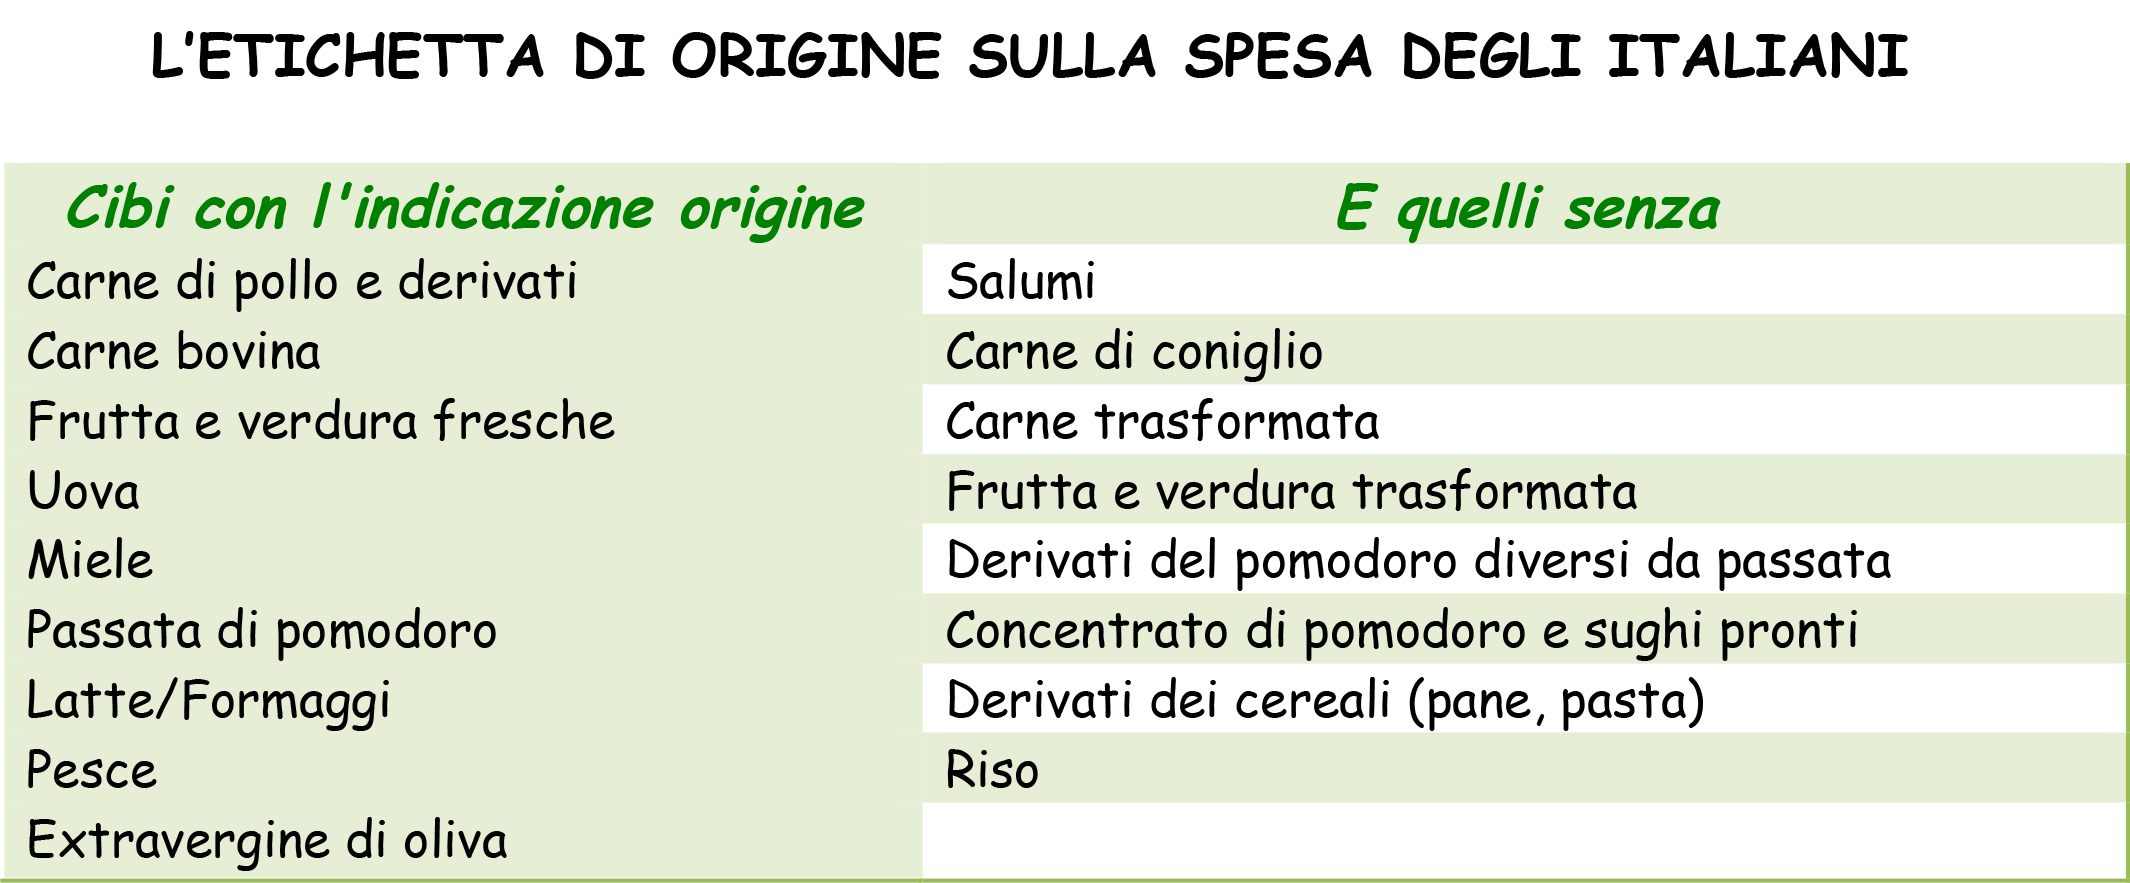 letichetta-di-origine-sulla-spesa-degli-italiani